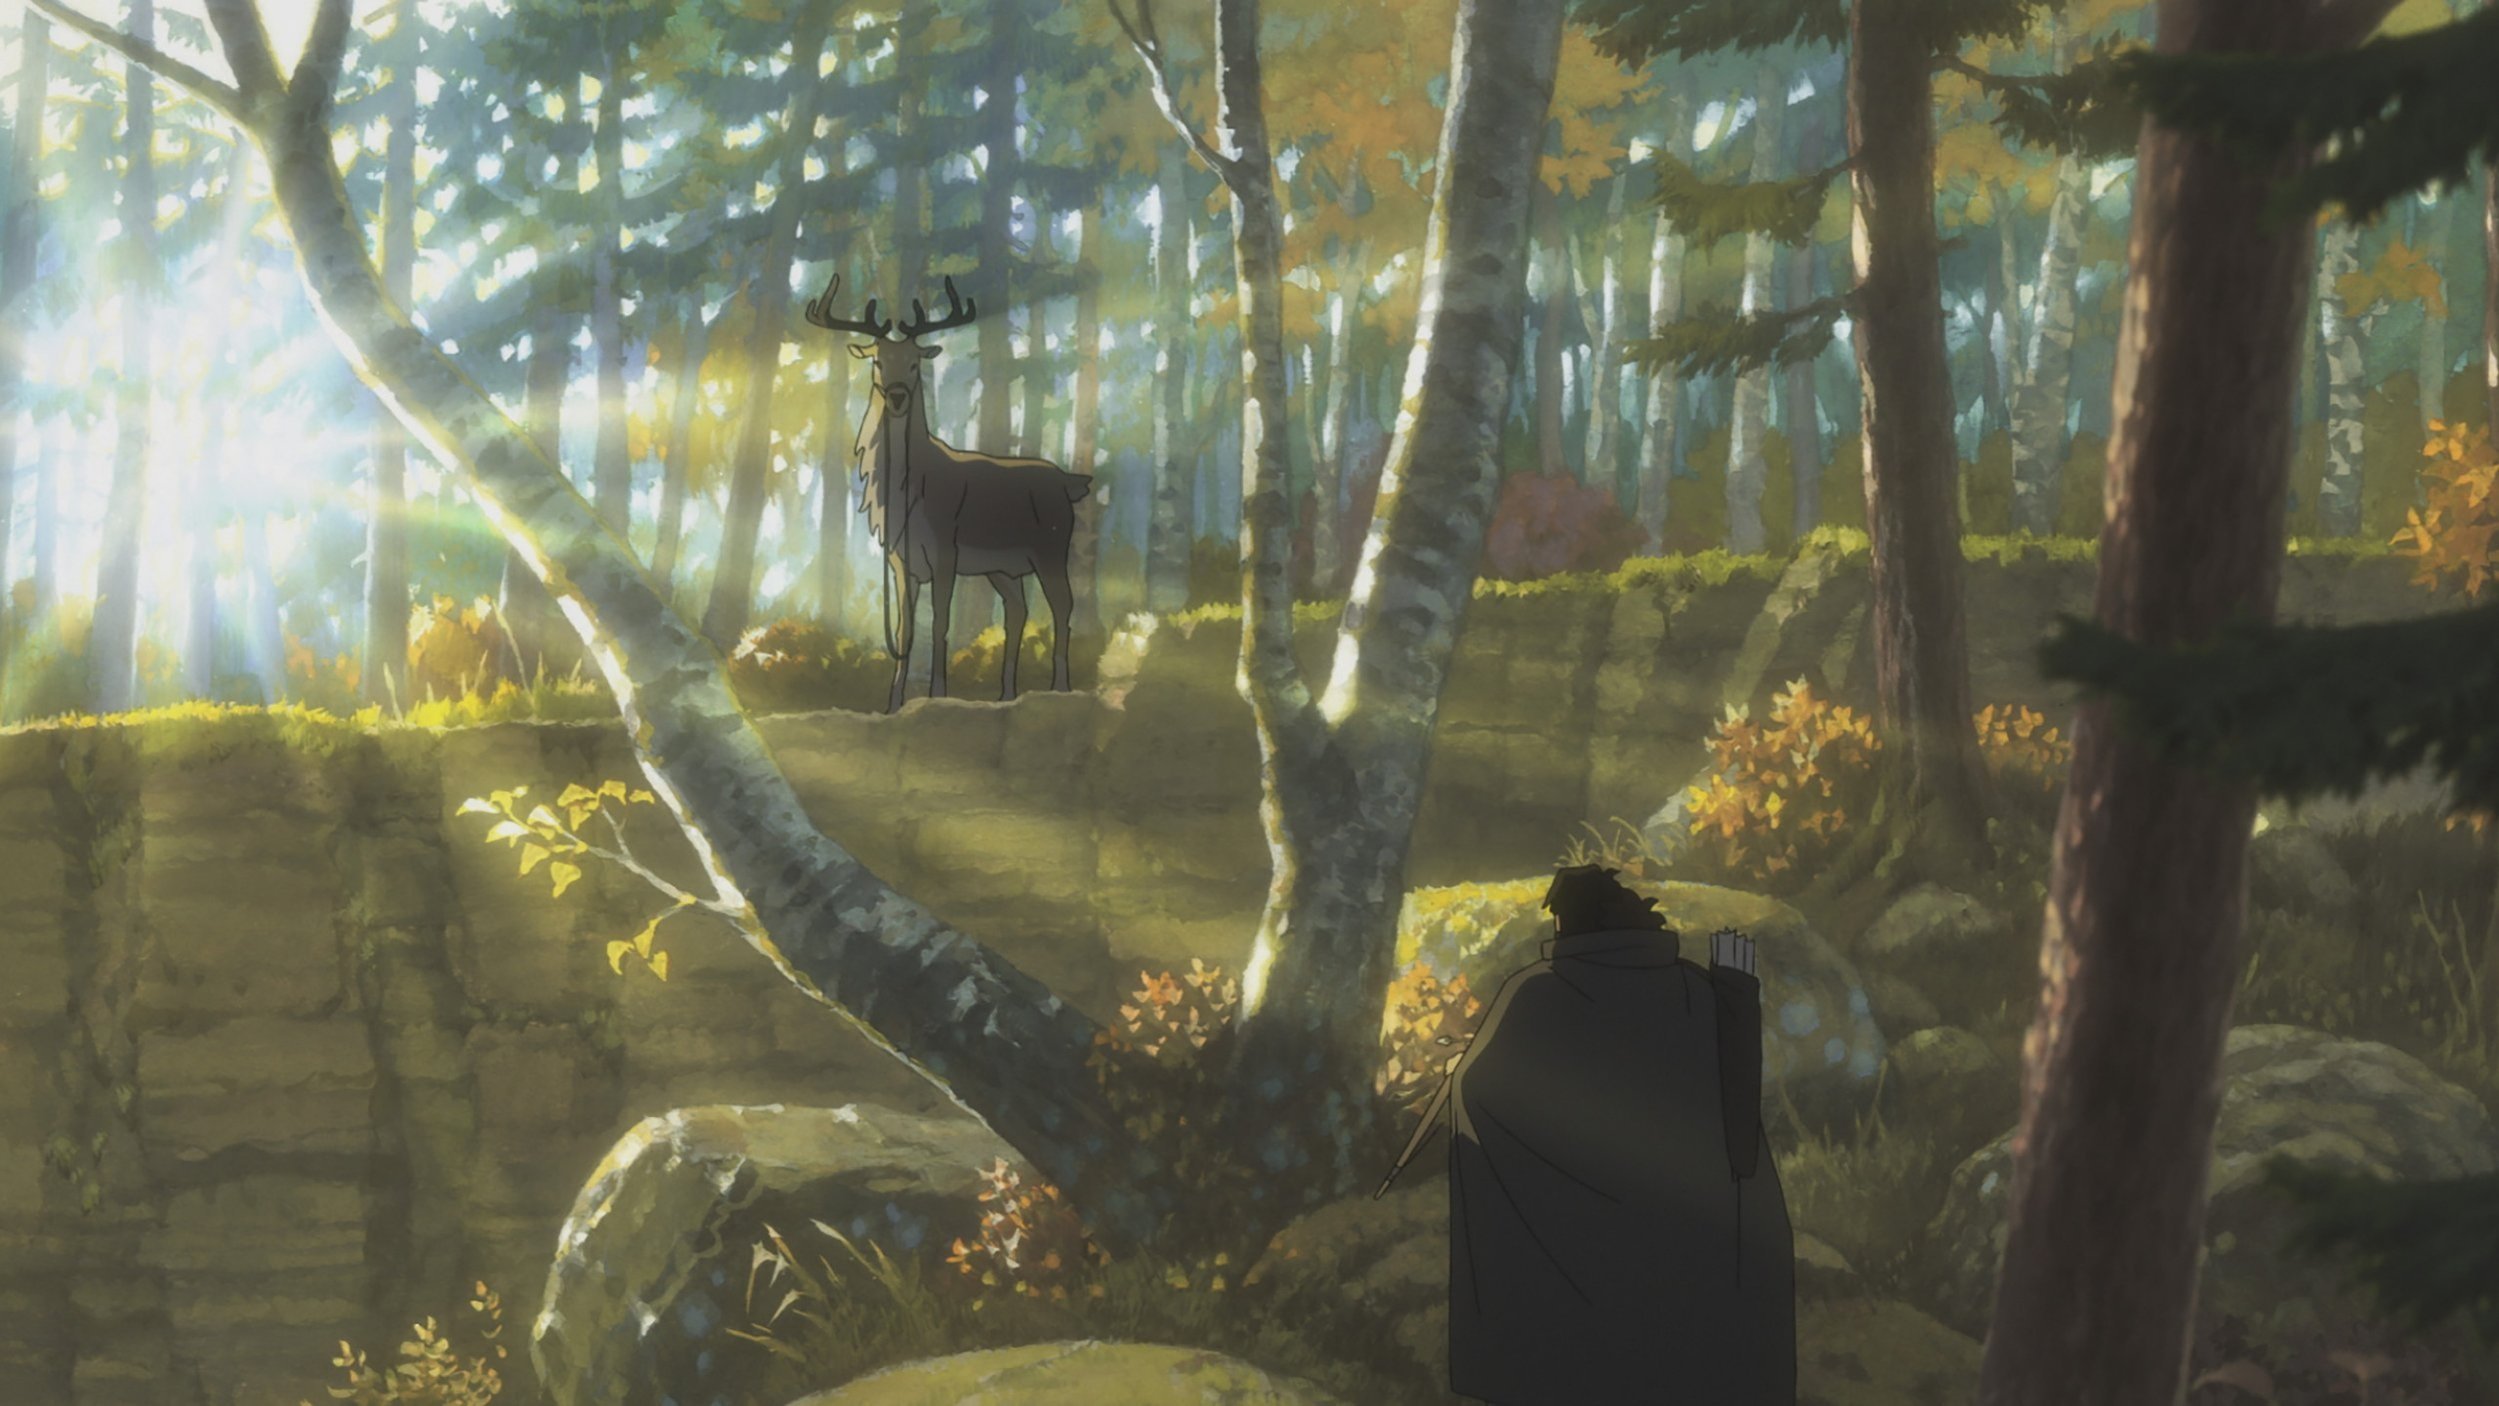 Deer King director brought Princess Mononoke lessons to new anime epic   Polygon